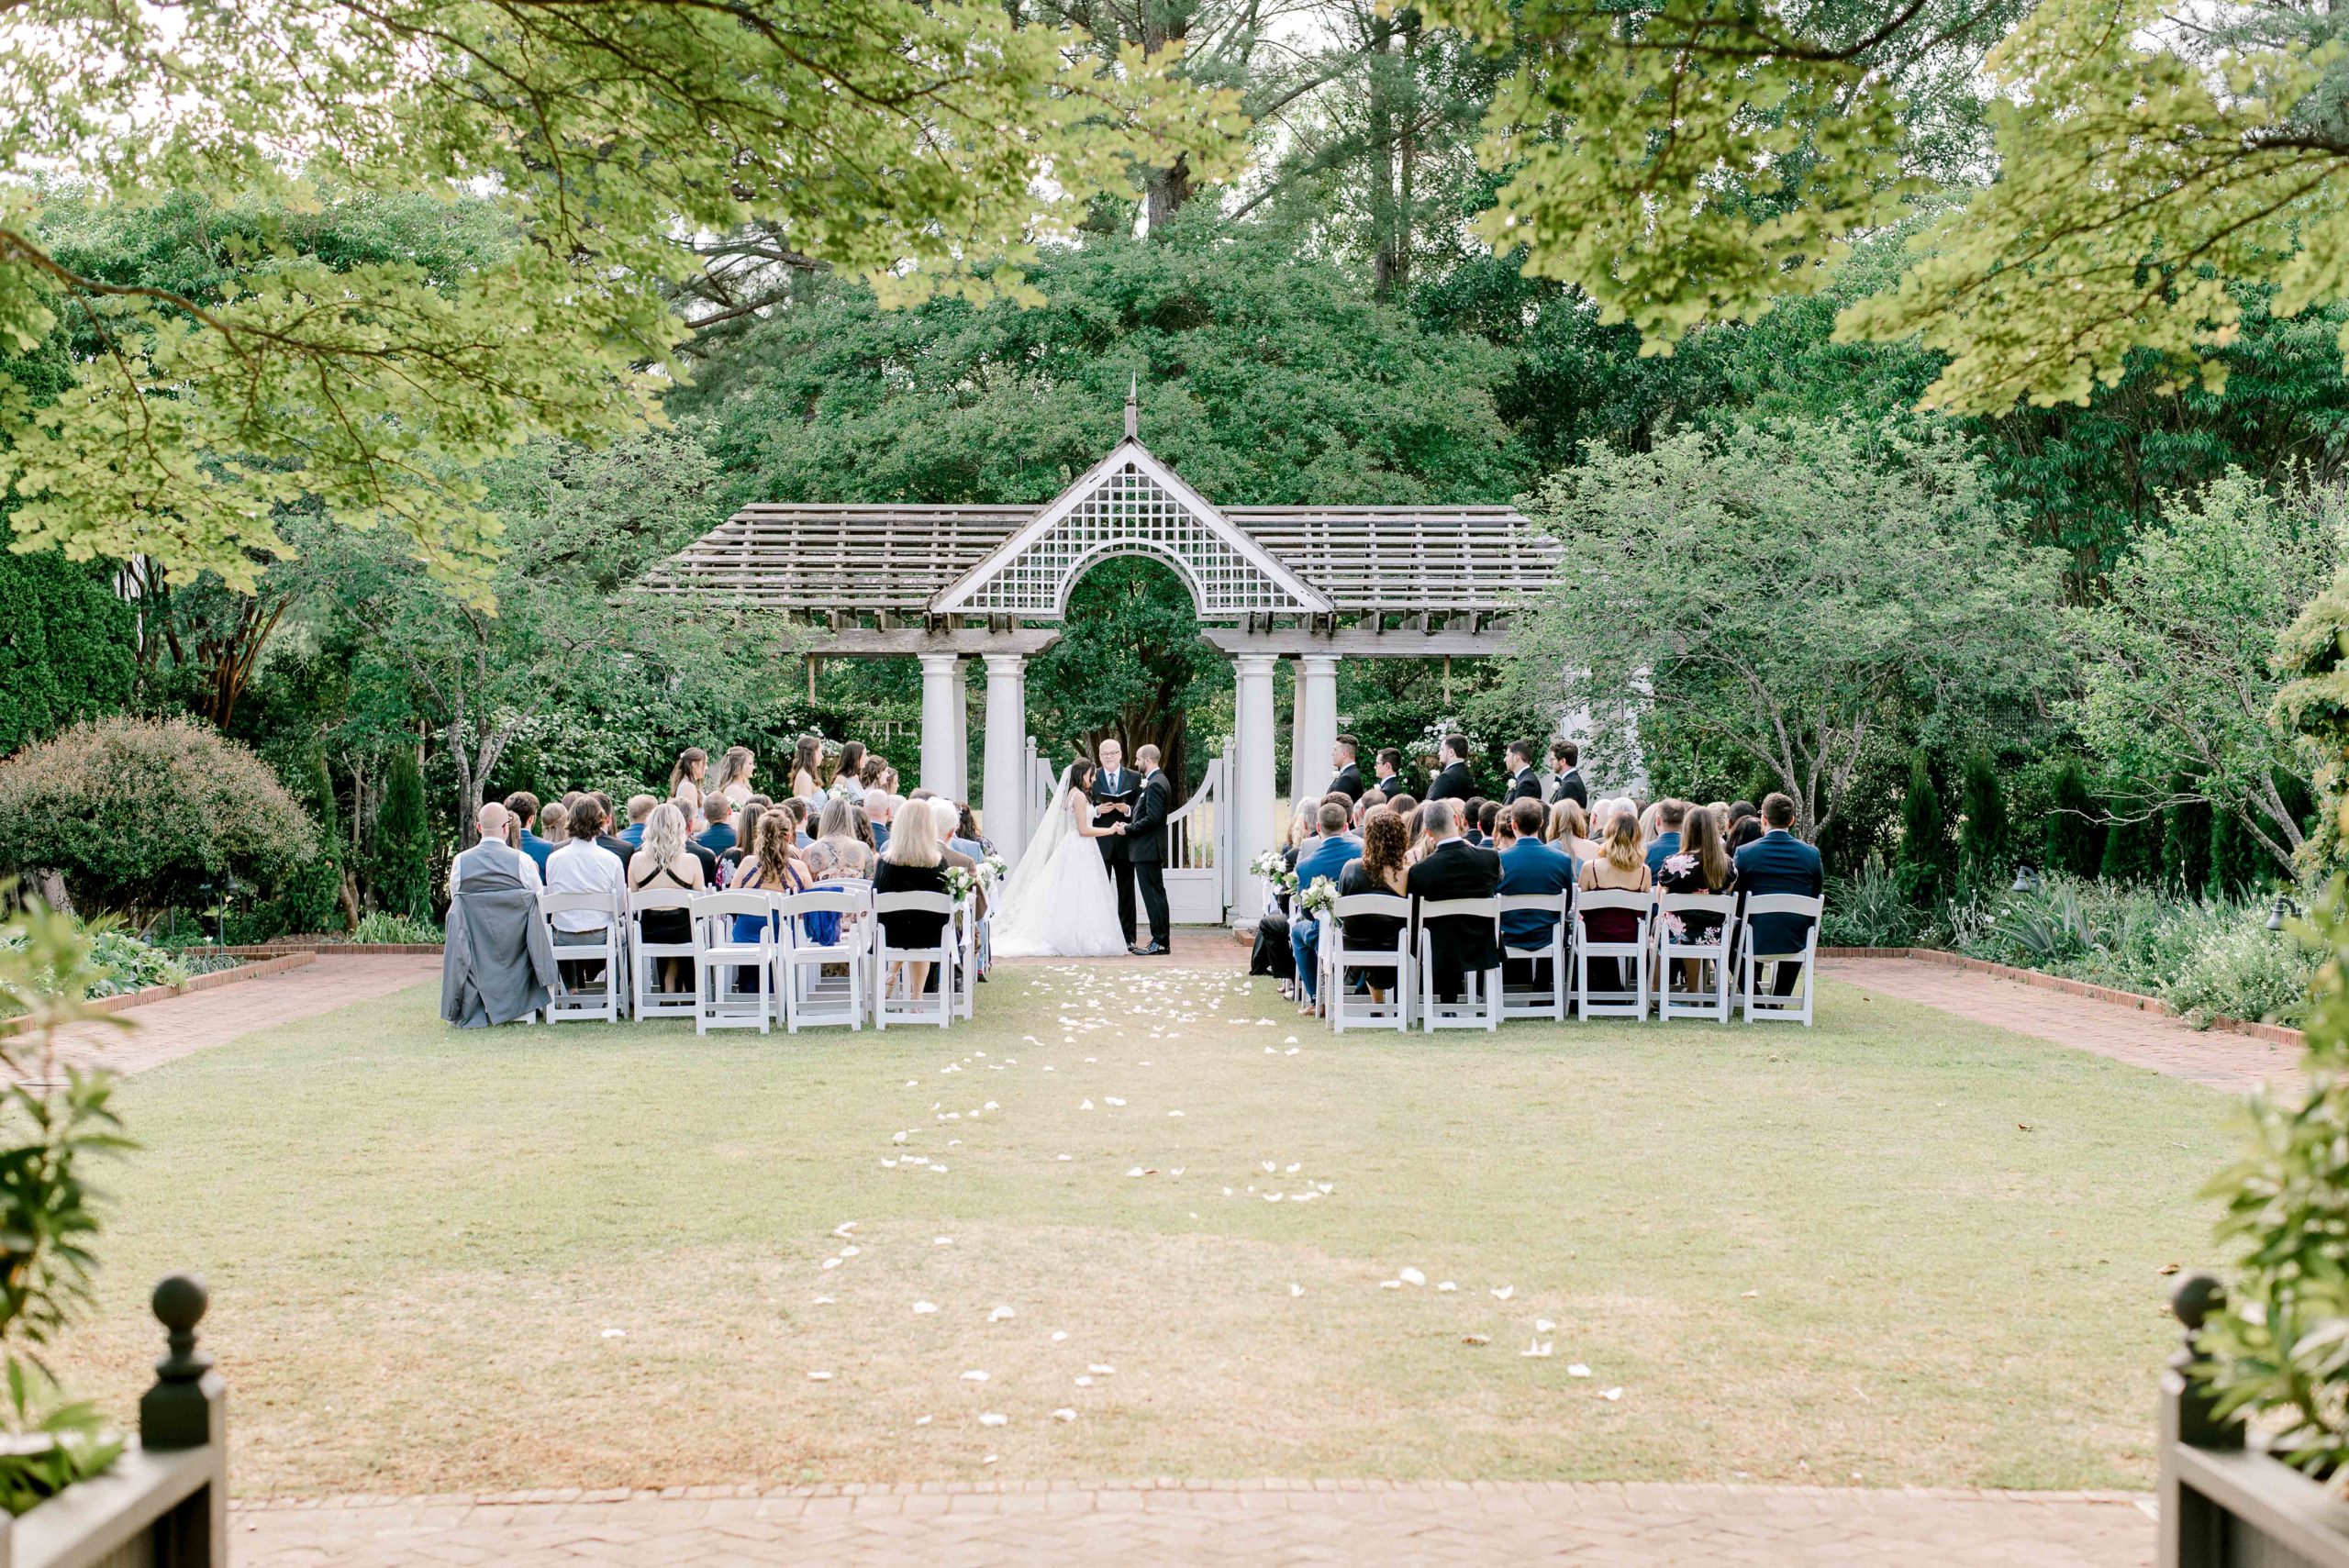 Daniel Stowe Botanical Garden Wedding ceremony